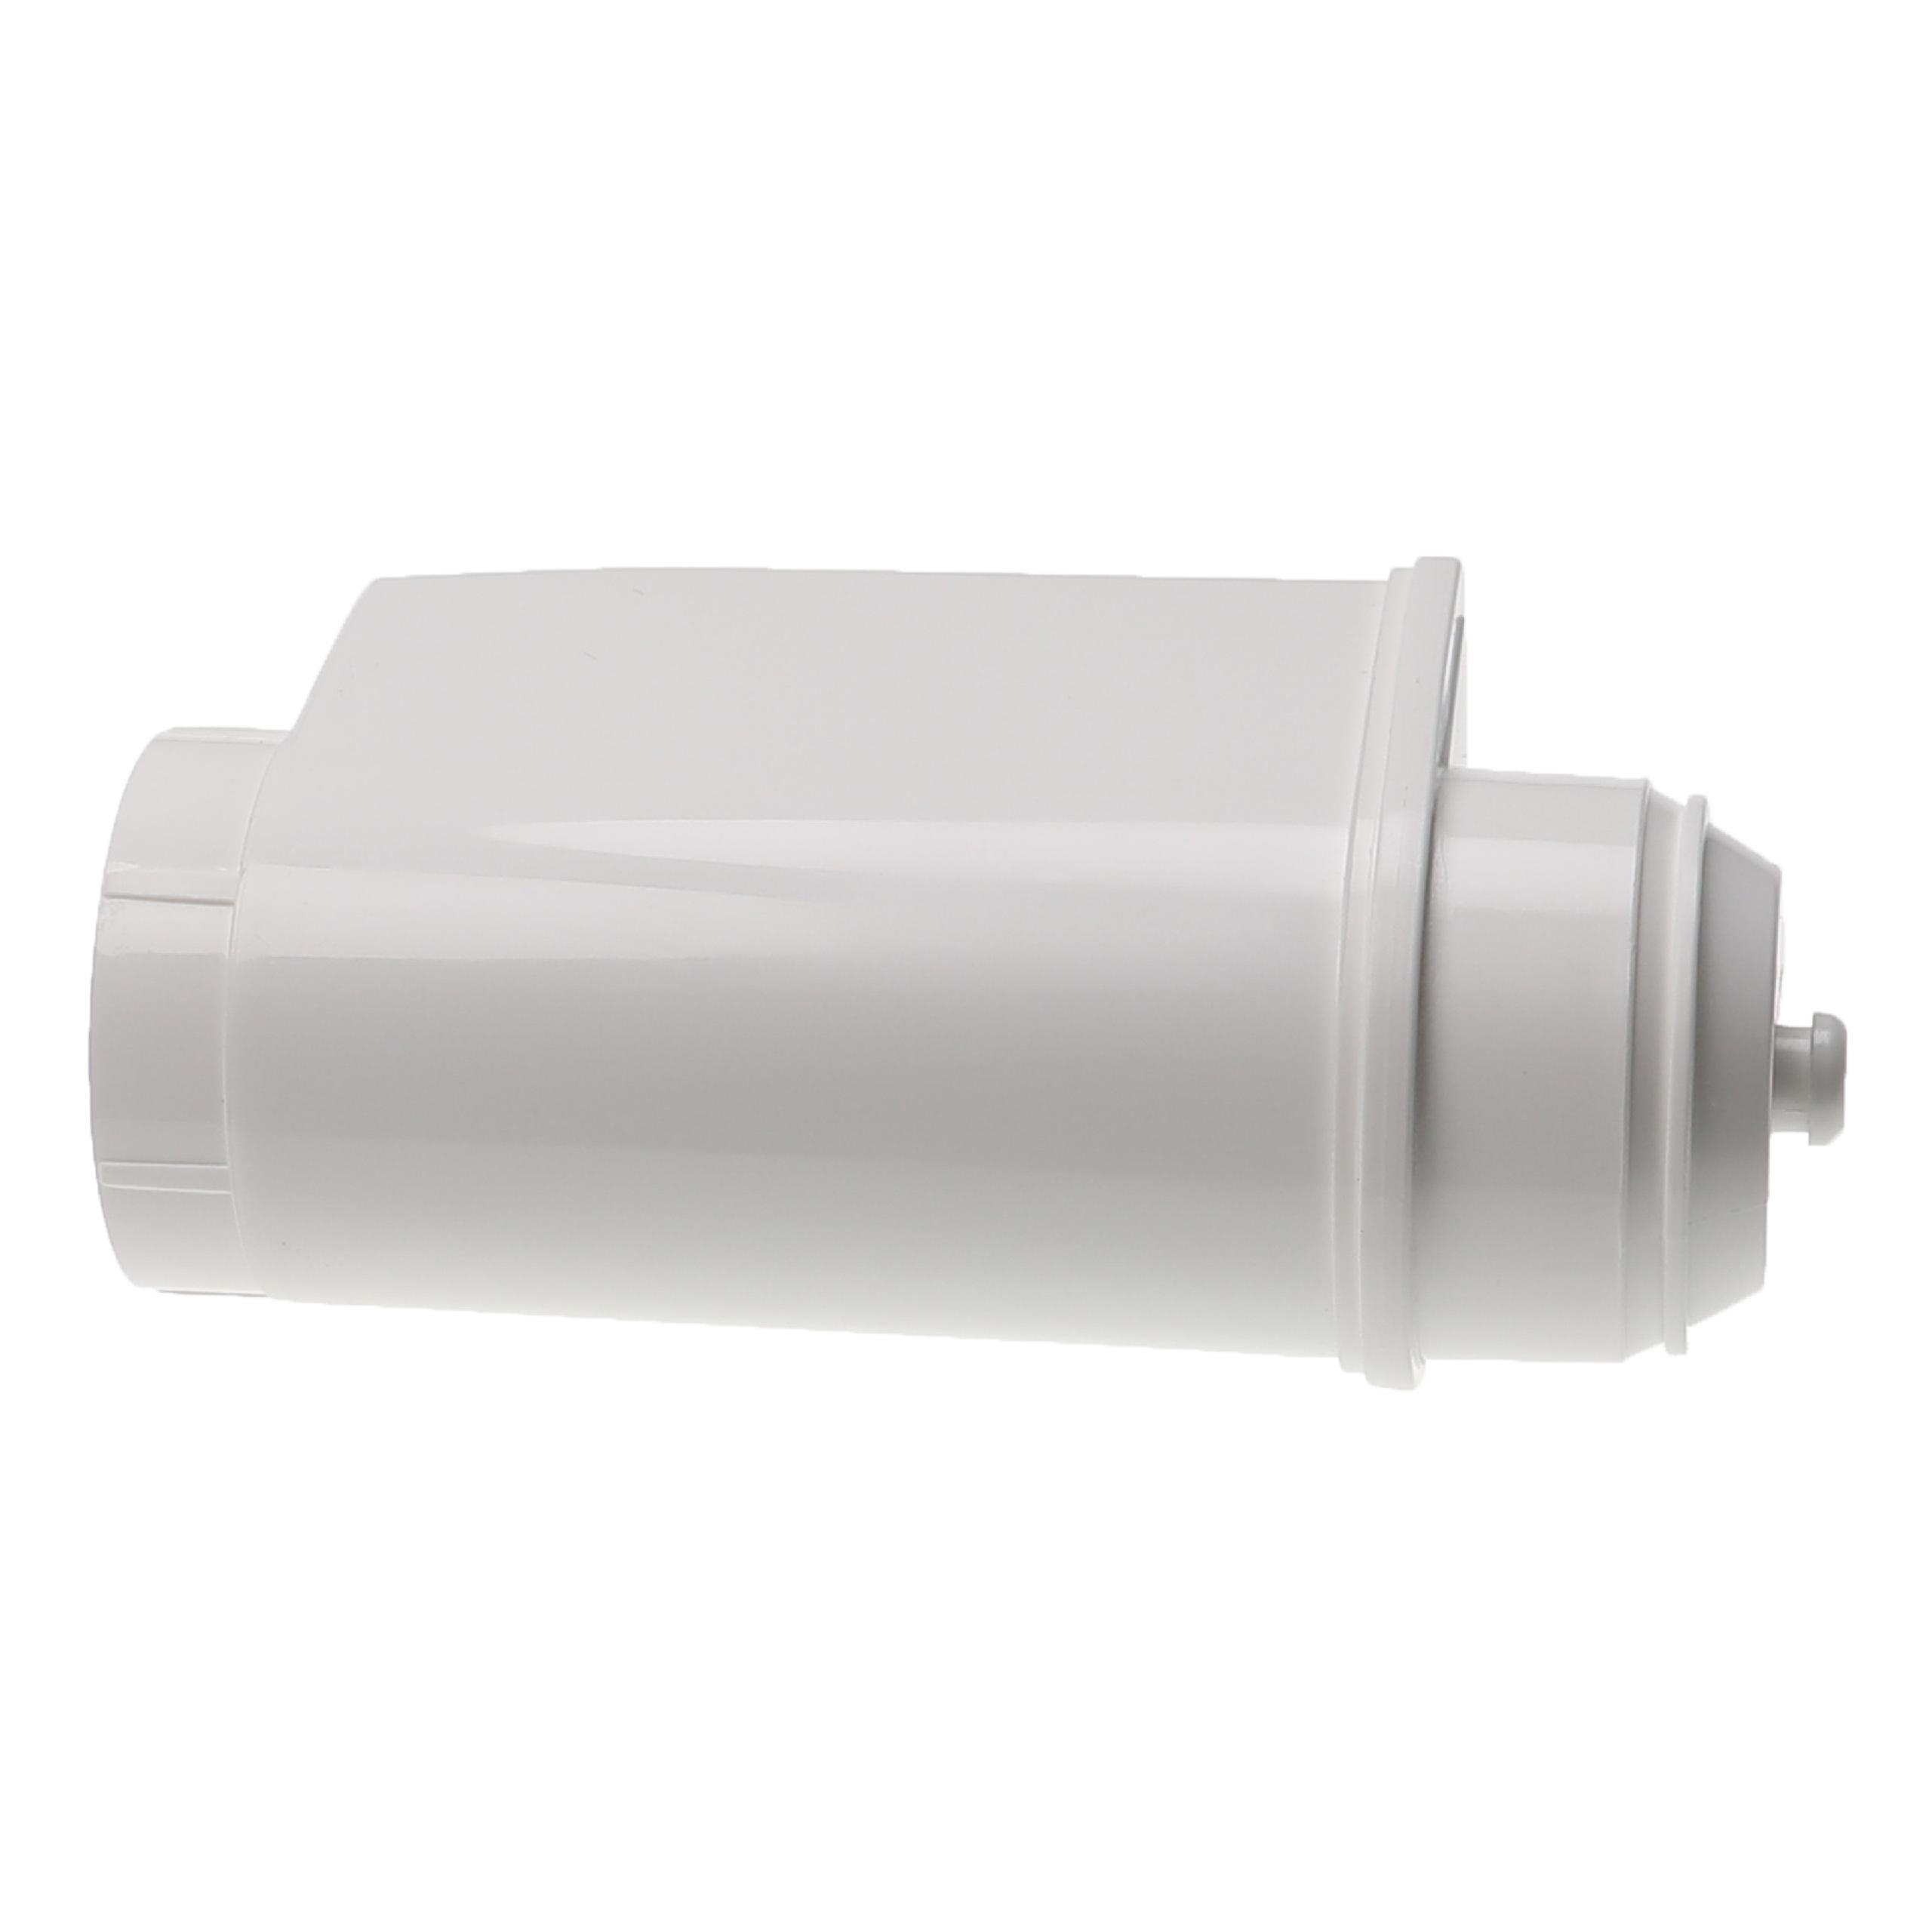 5x Filtr wody do ekspresu Bosch zamiennik Siemens TZ70033 - biały